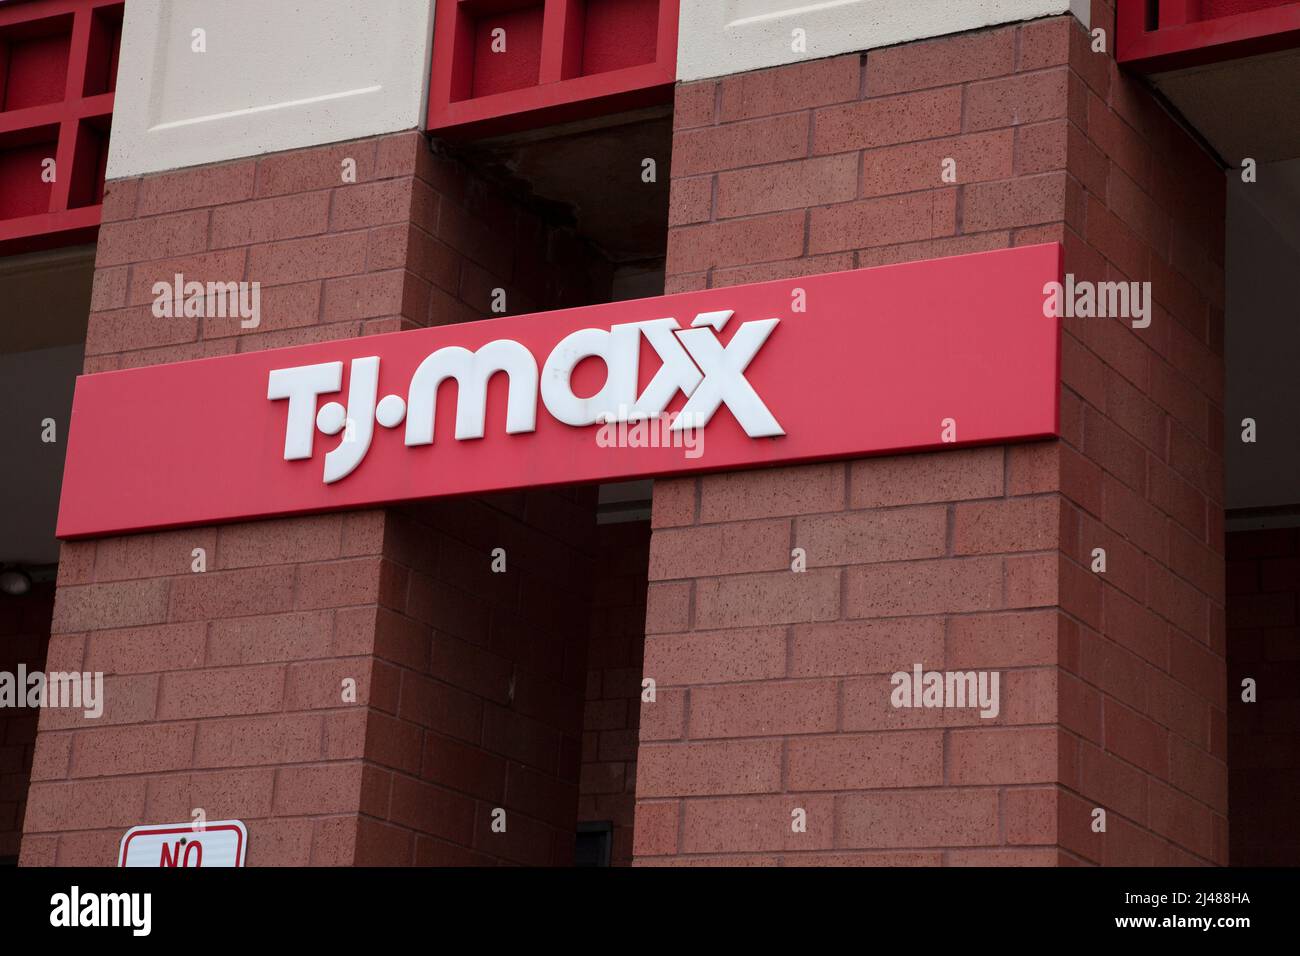 T. J. Maxx vendiendo ropa y decoración para el hogar a precios más bajos. St Paul Minnesota MN EE.UU Foto de stock